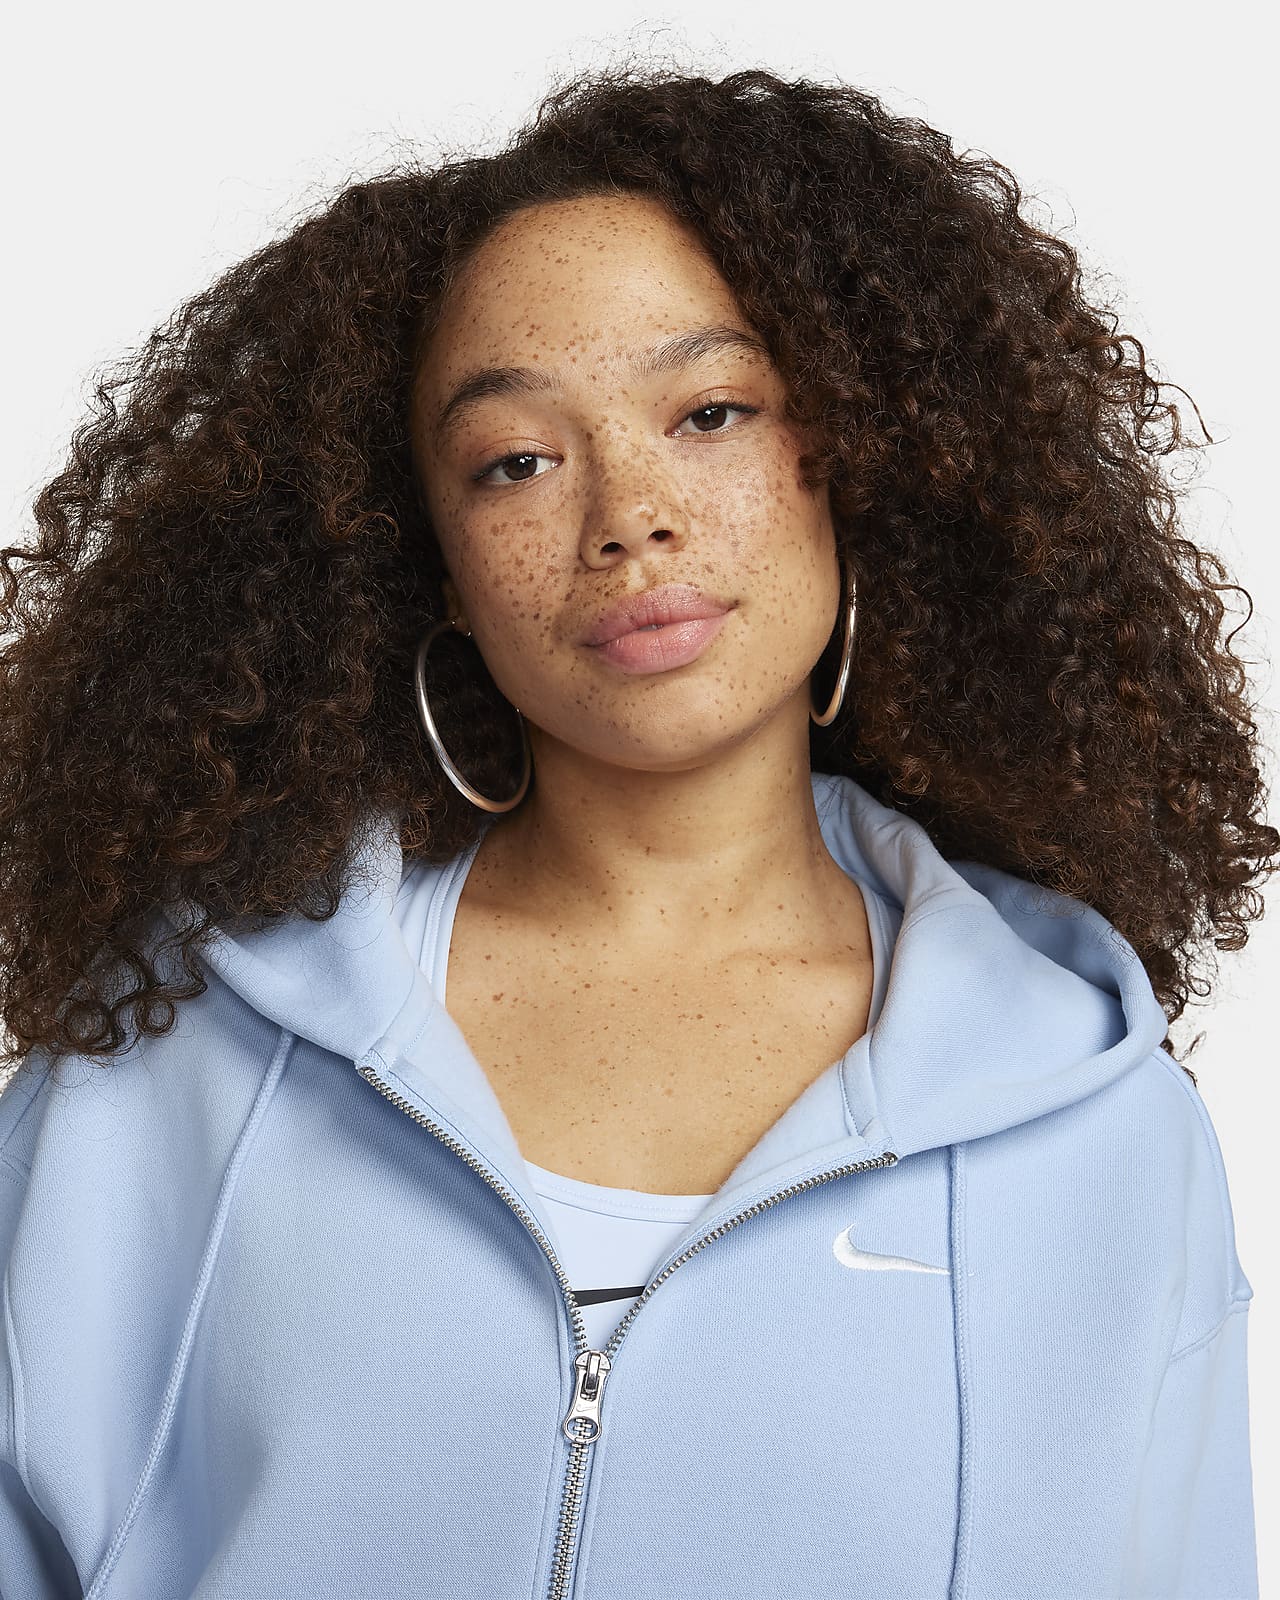 Nike Sportswear Phoenix Fleece Women's Oversized Full-Zip Hoodie